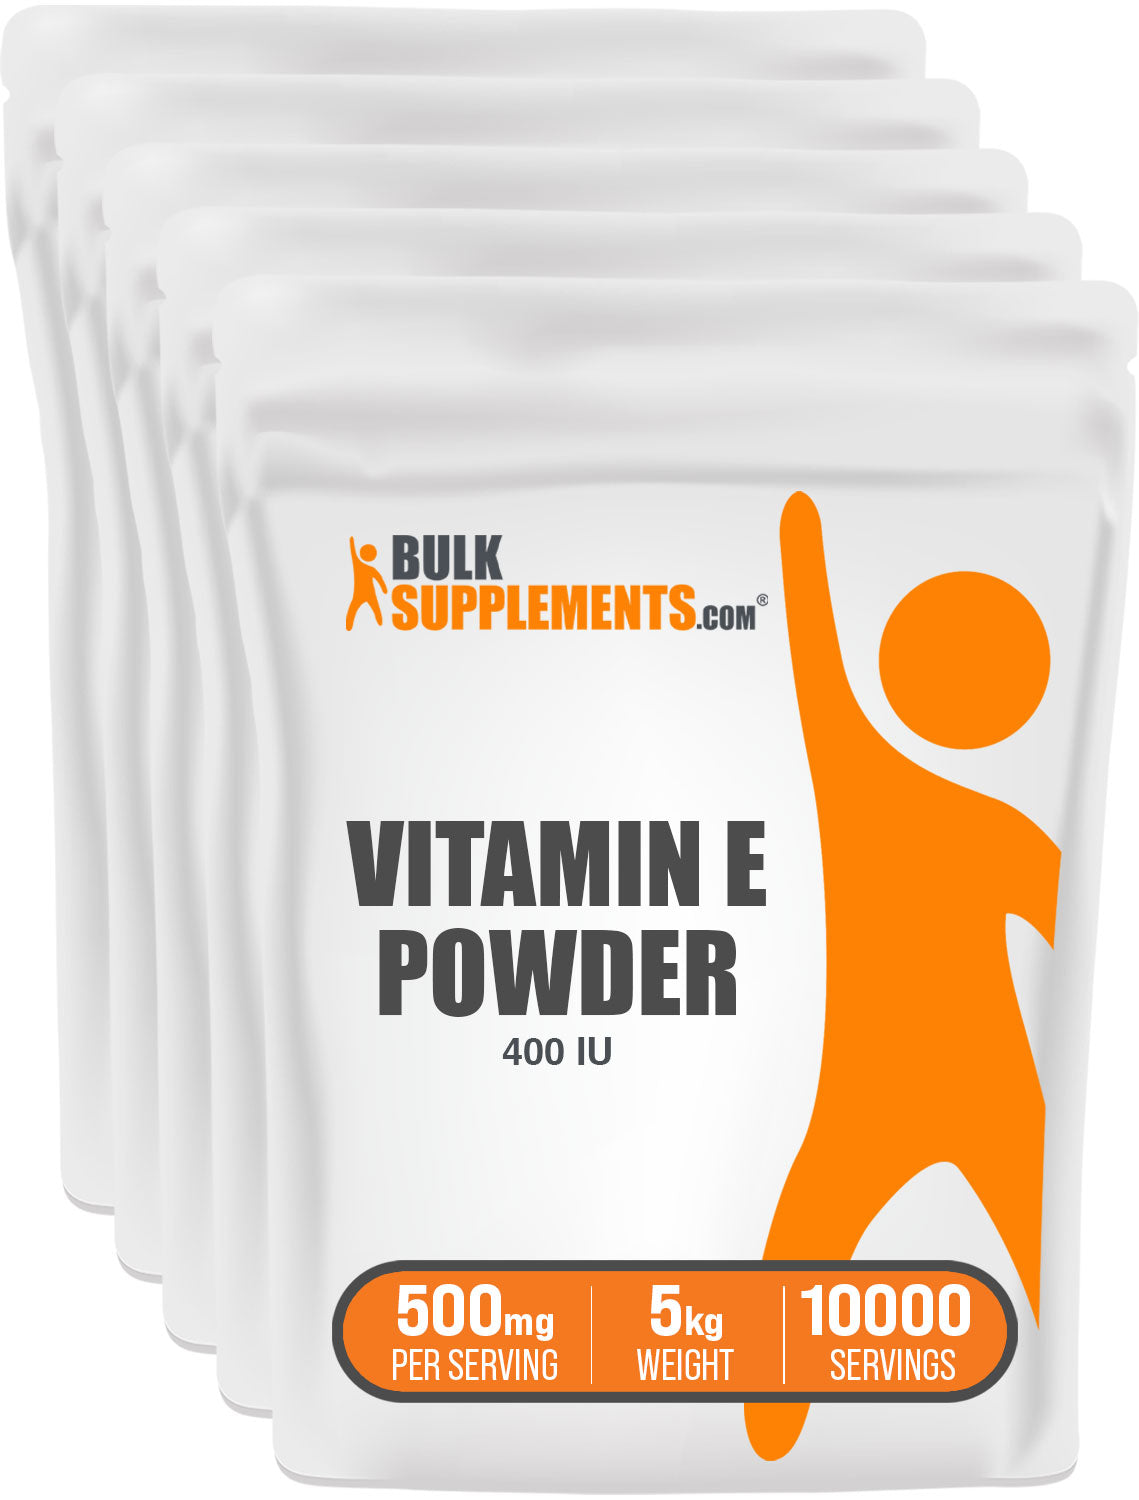  BulkSupplements.com Vitamin E 400 IU Powder 5kg bags